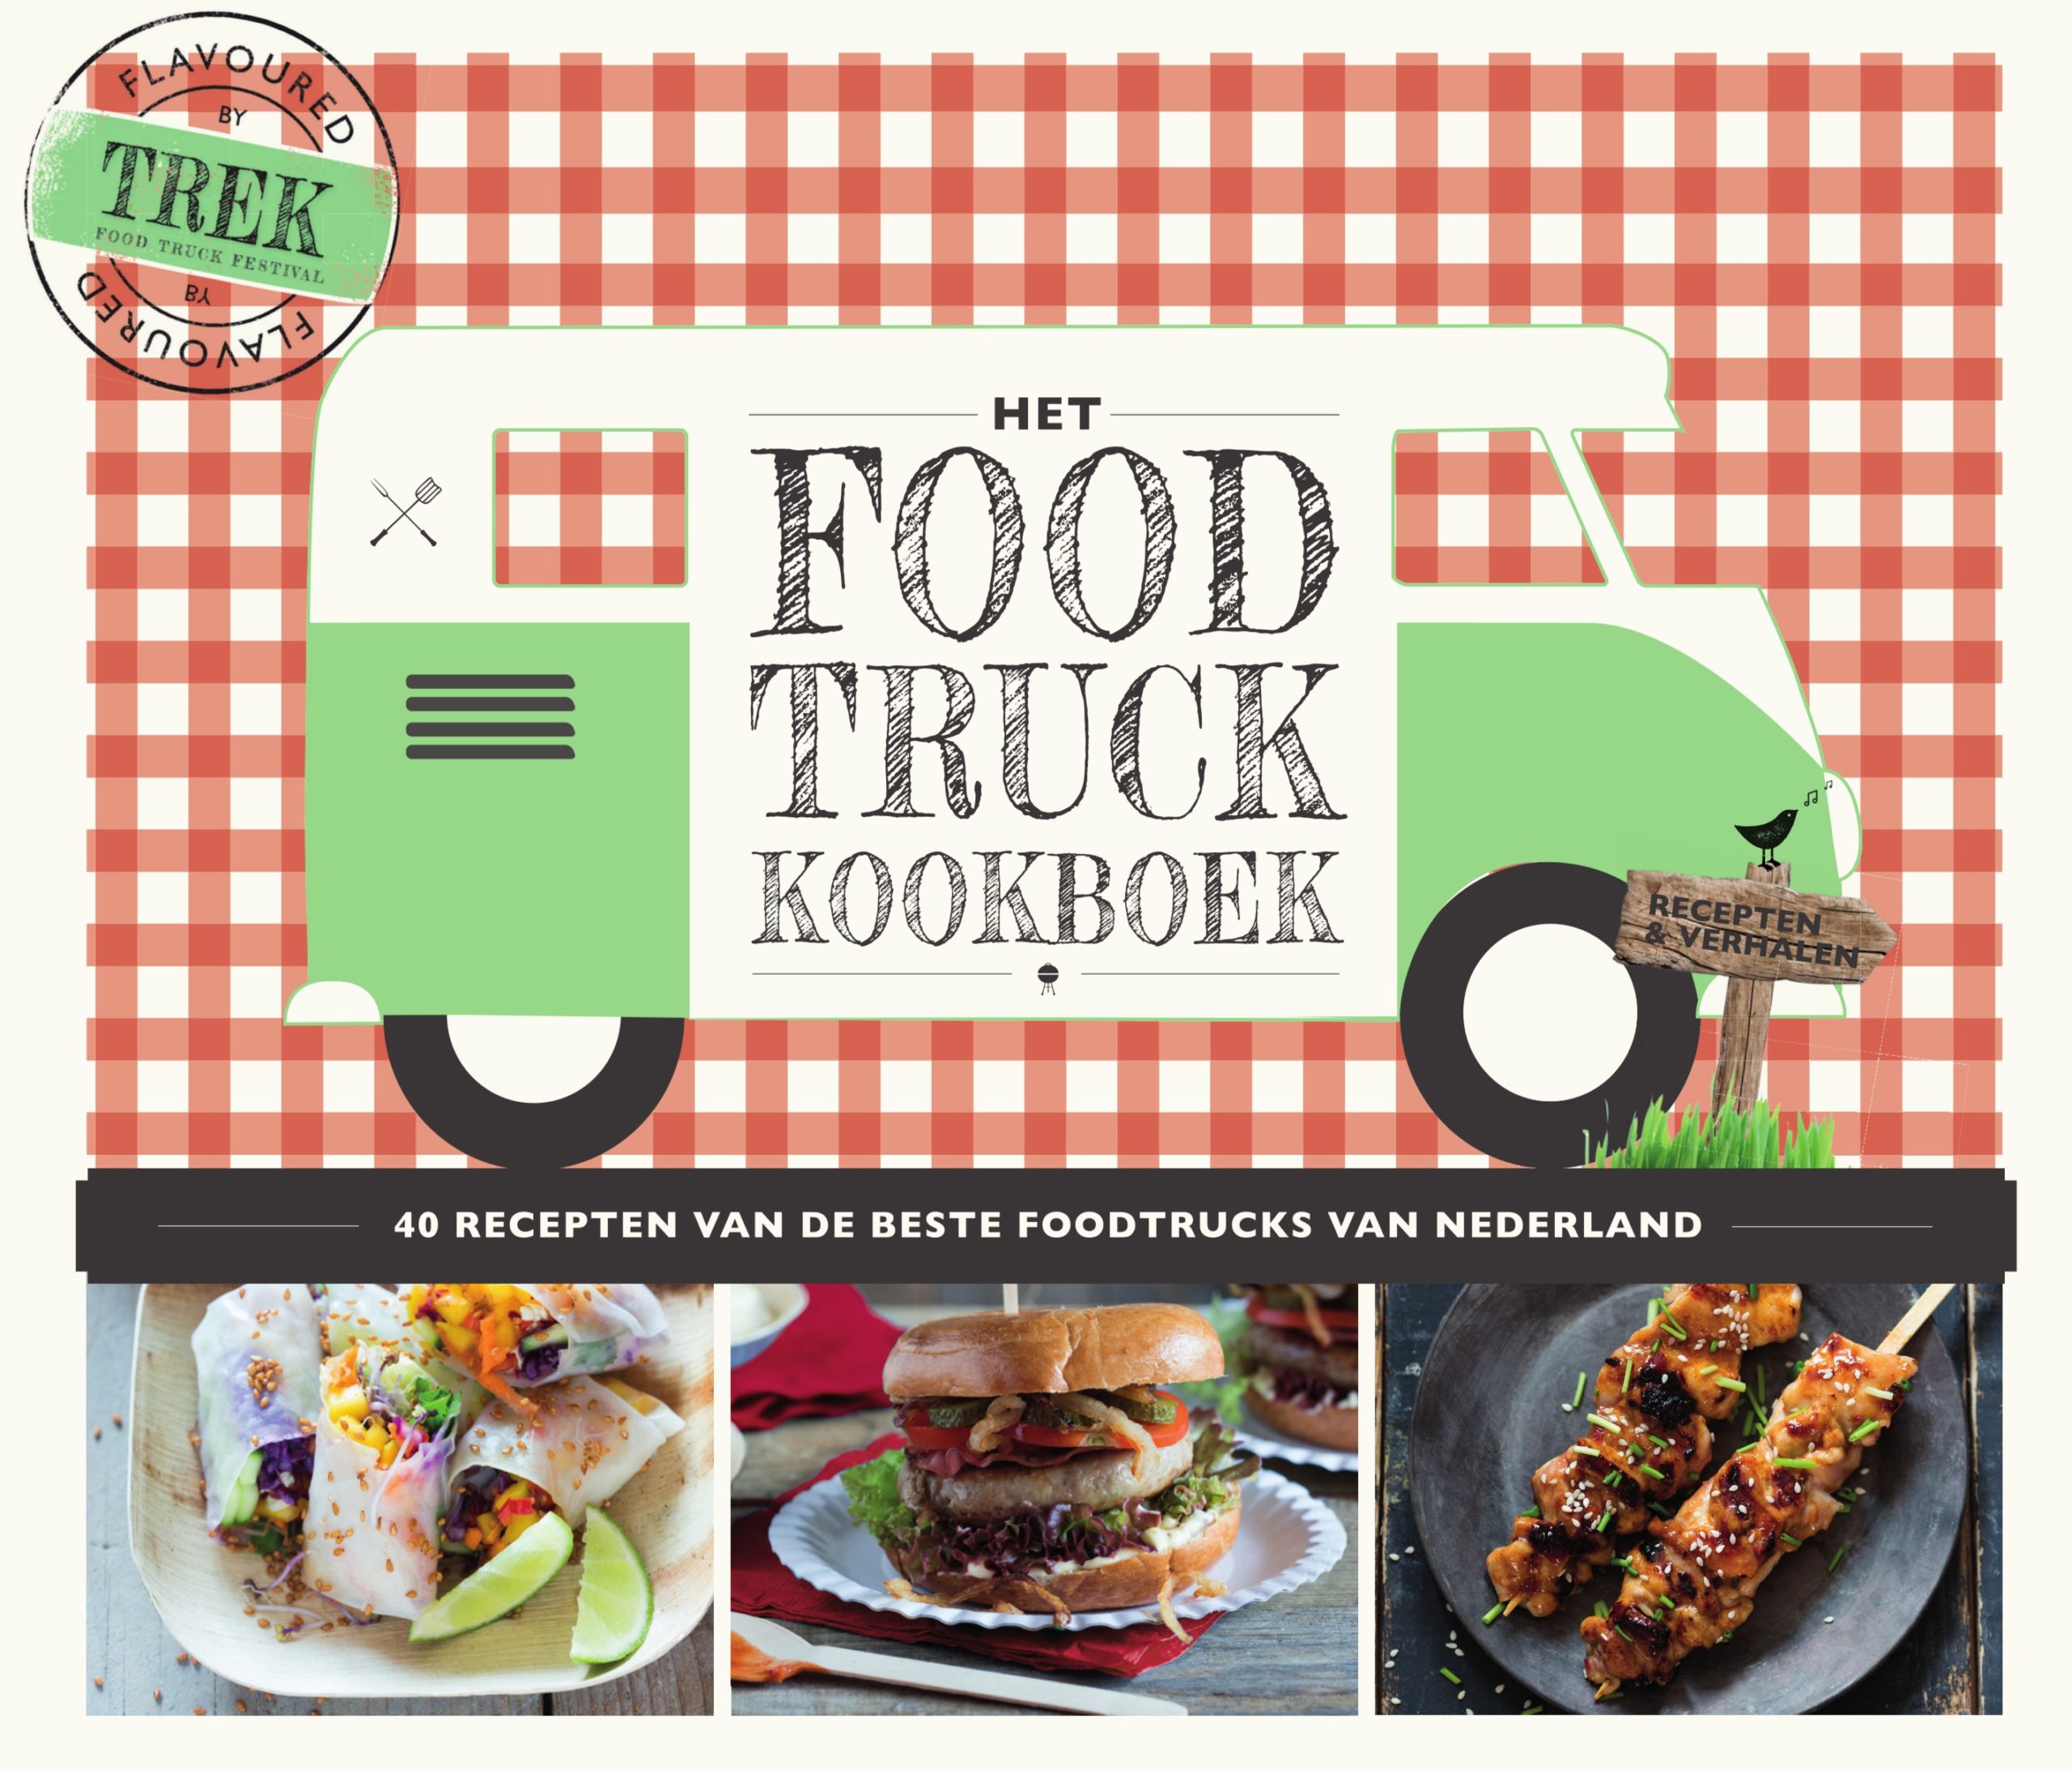 Het food truck kookboek